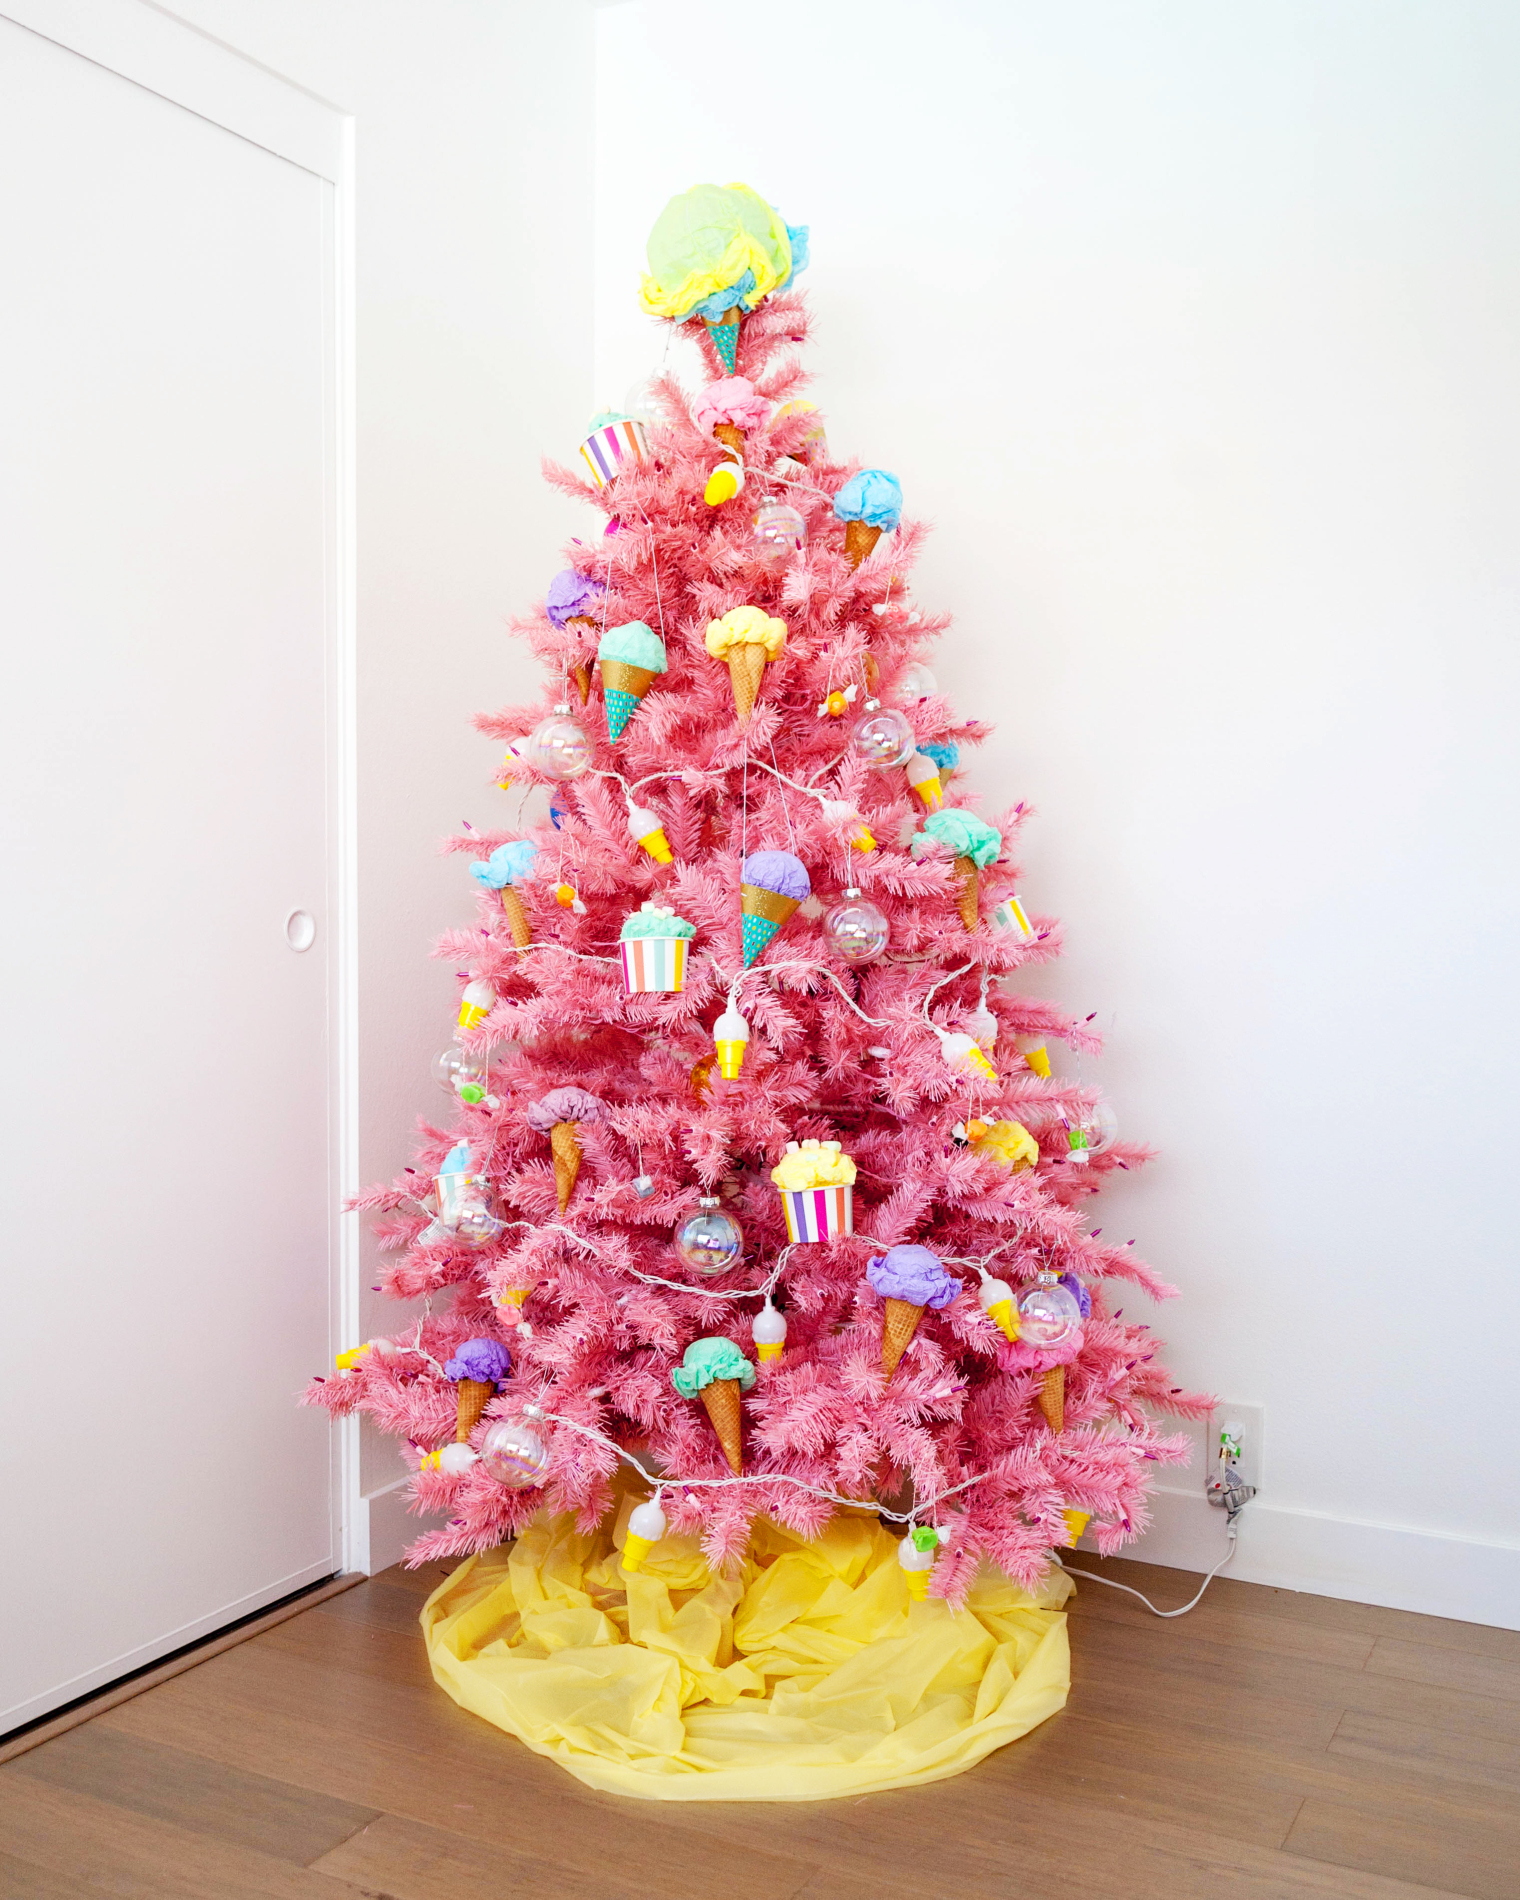 Bọn trẻ trong nhà chắc chắn sẽ bình chọn cho cây thông Noel này nhiều nhất, bởi nó mang sắc hồng ngọt ngào cùng vô số những cây kem và bánh hấp dẫn.